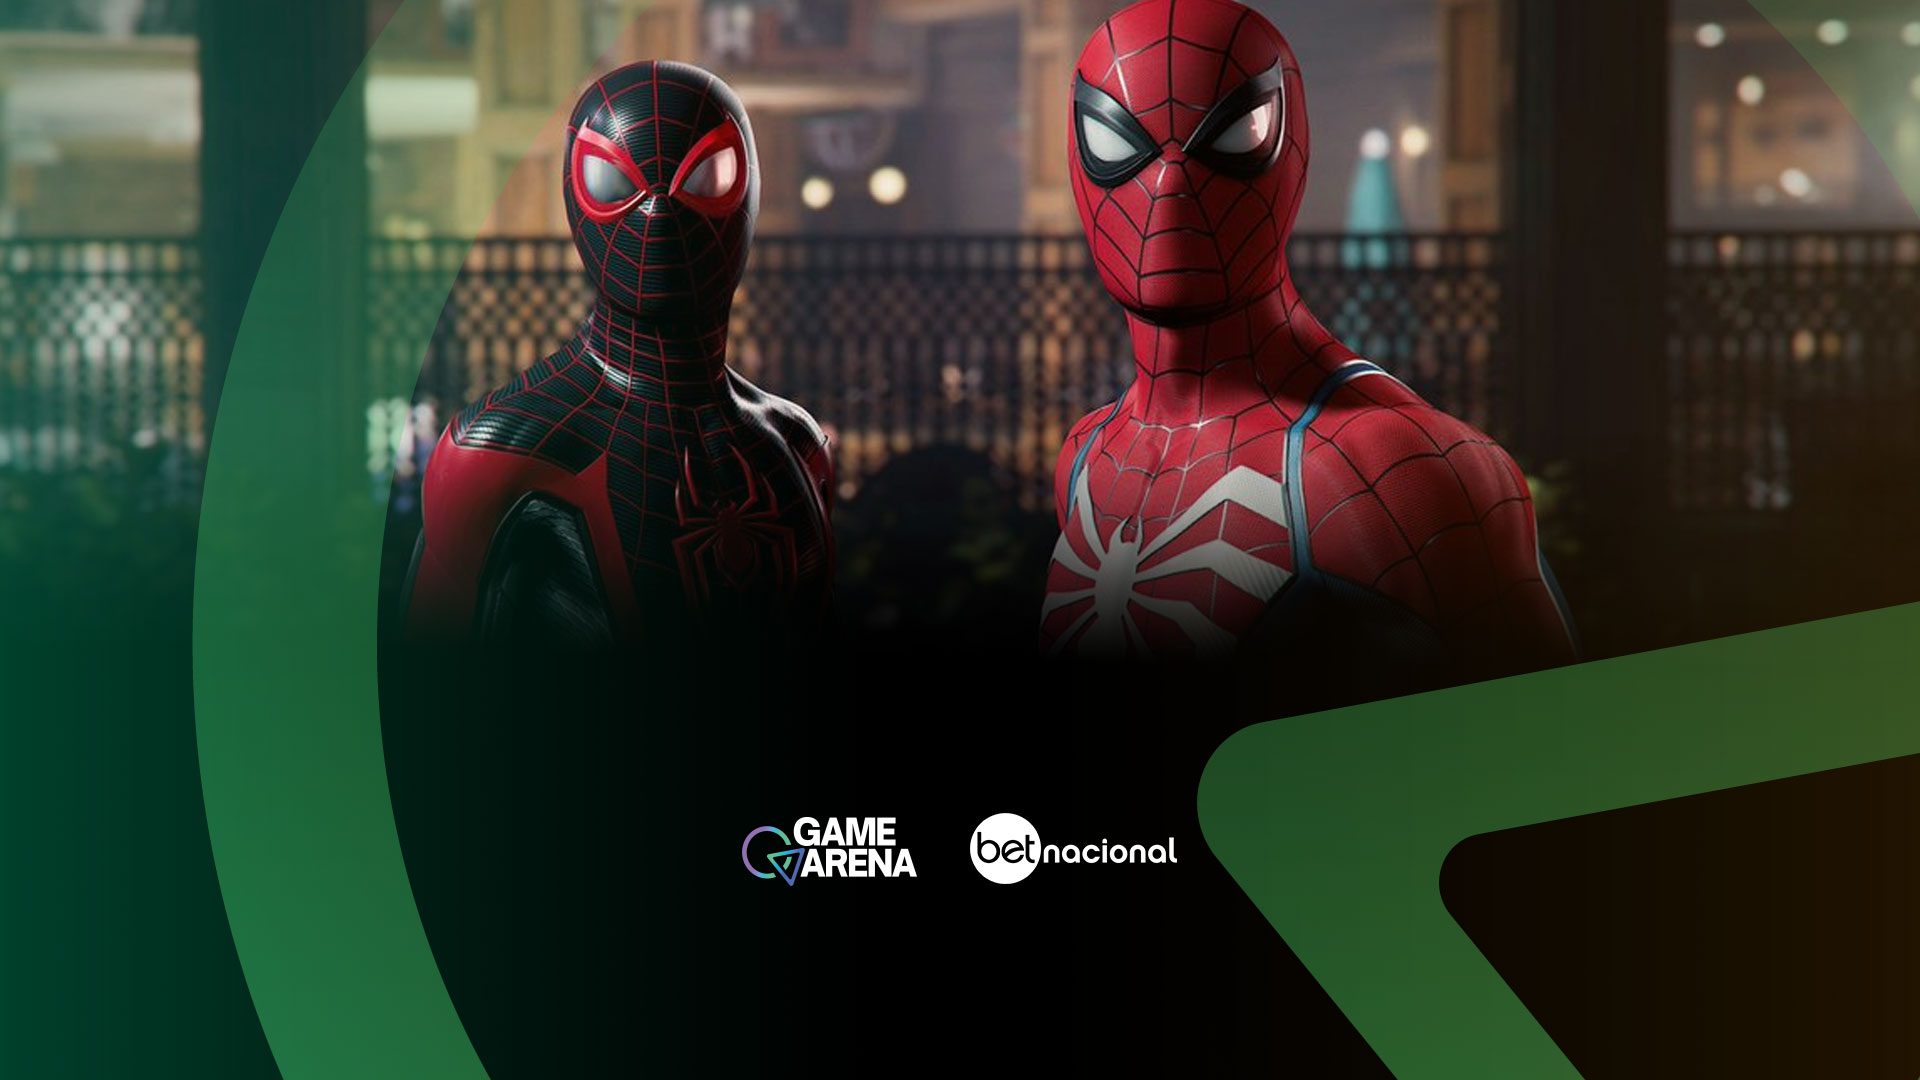 Afinal, Spider-Man 2 será lançado para PC? Veja previsões